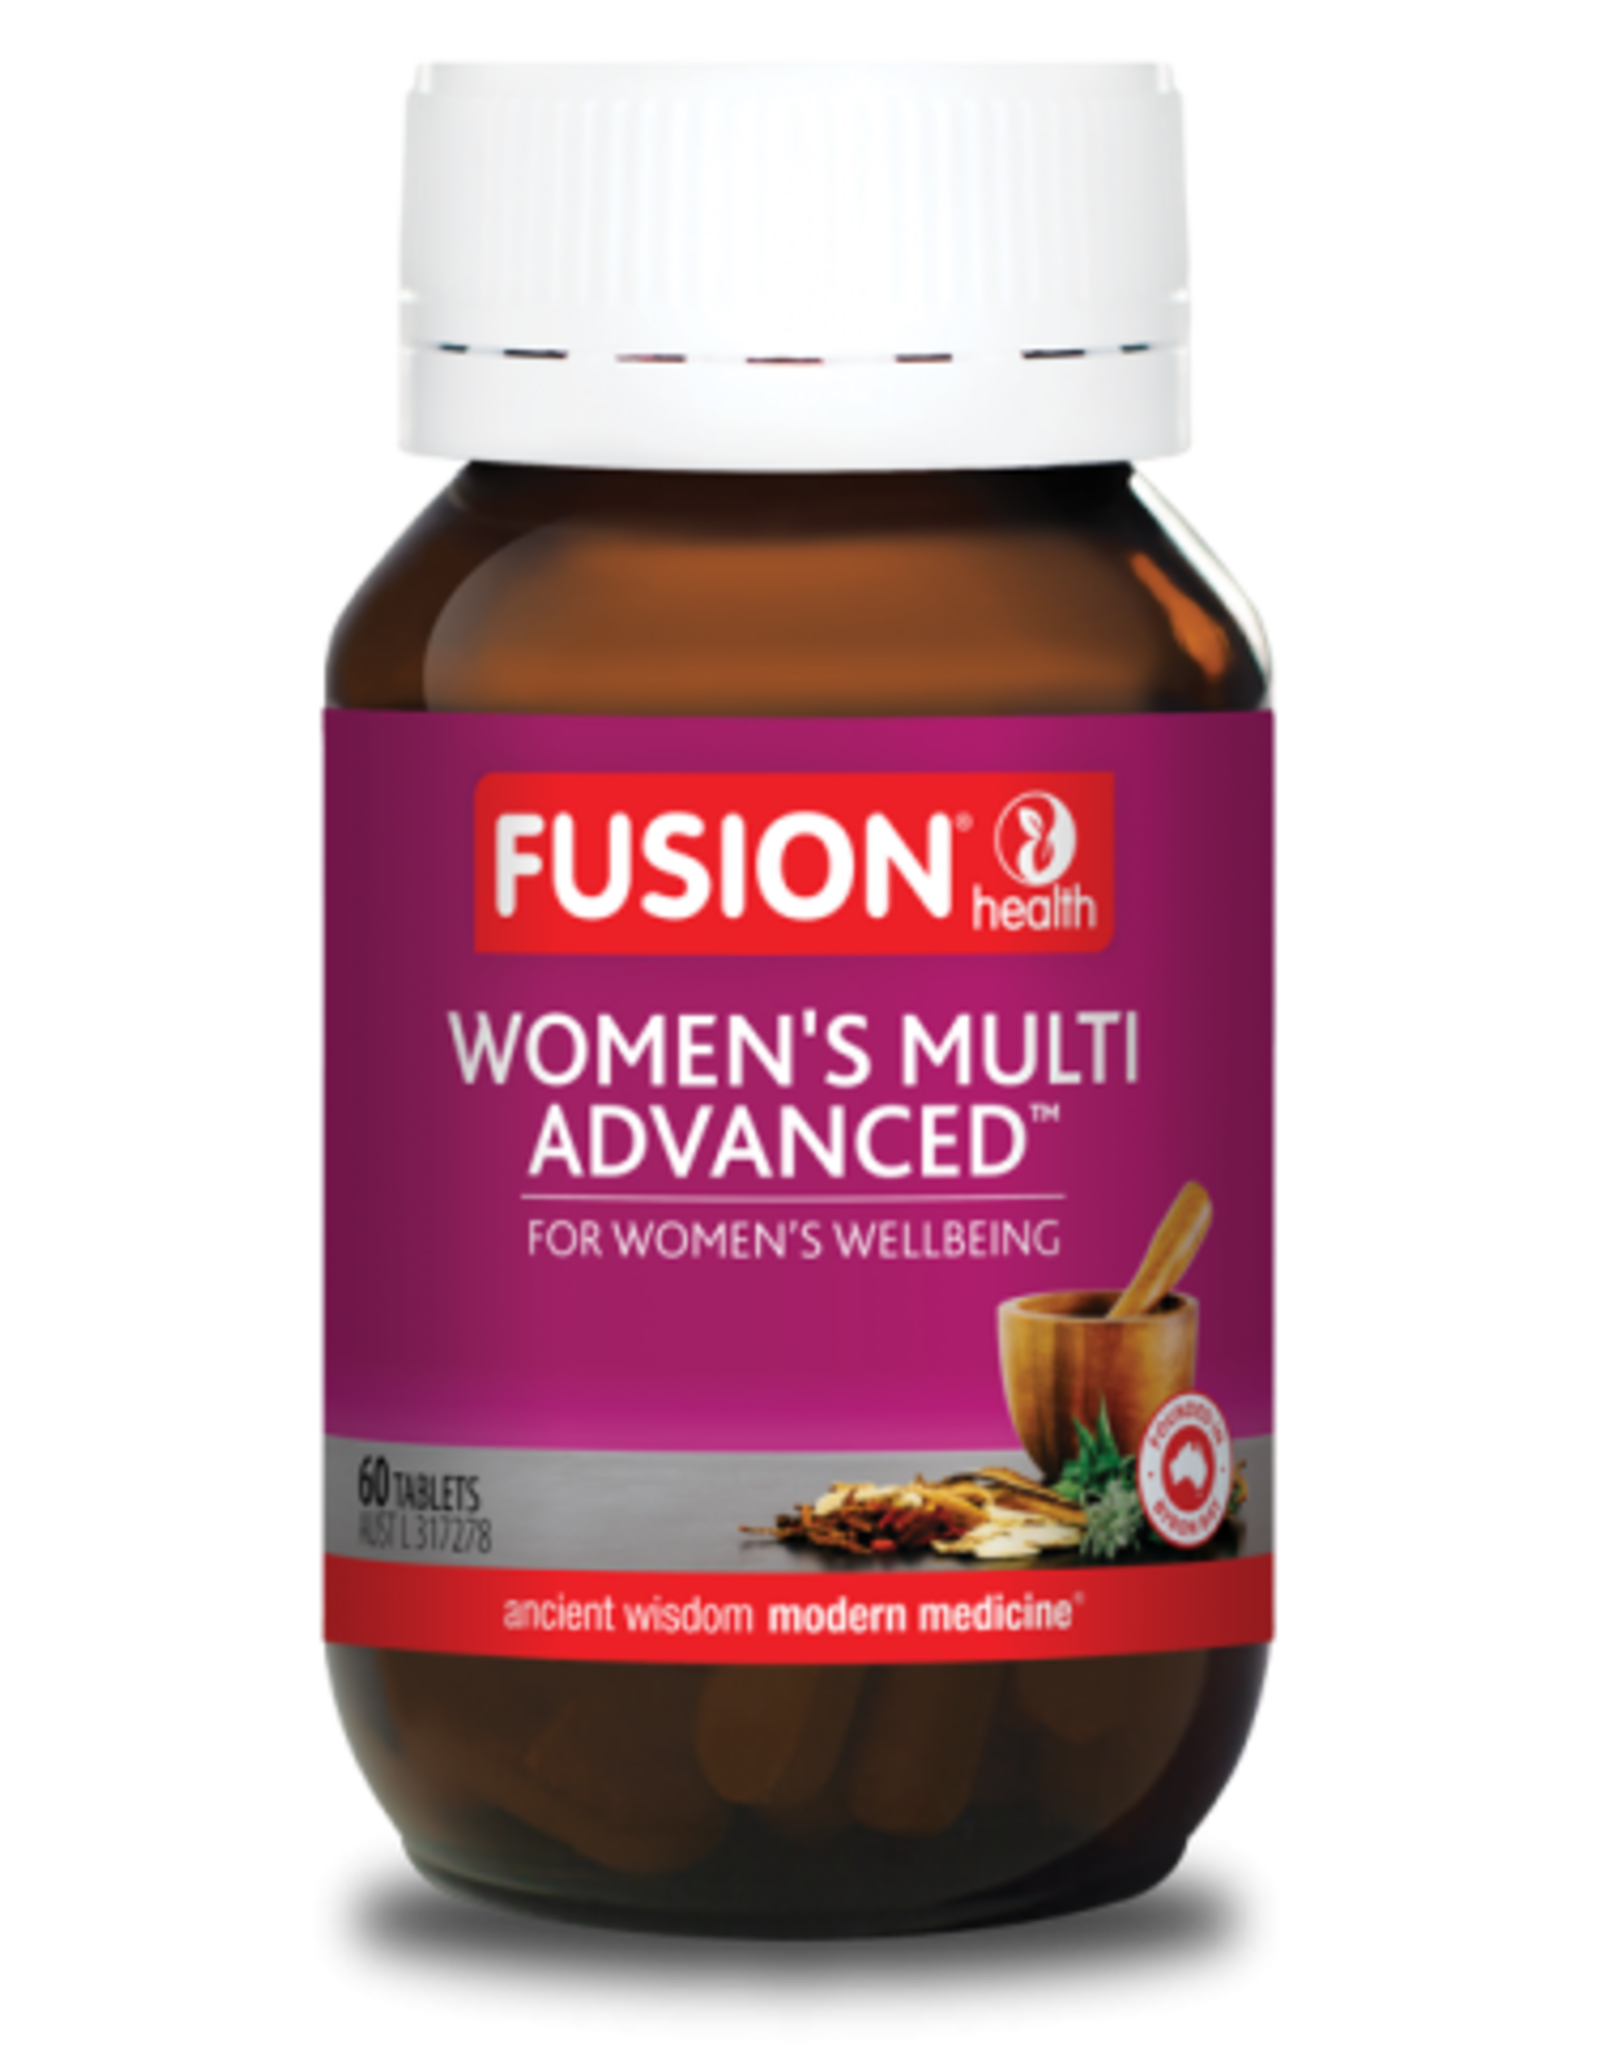 Fusion Women's Multi Advanced